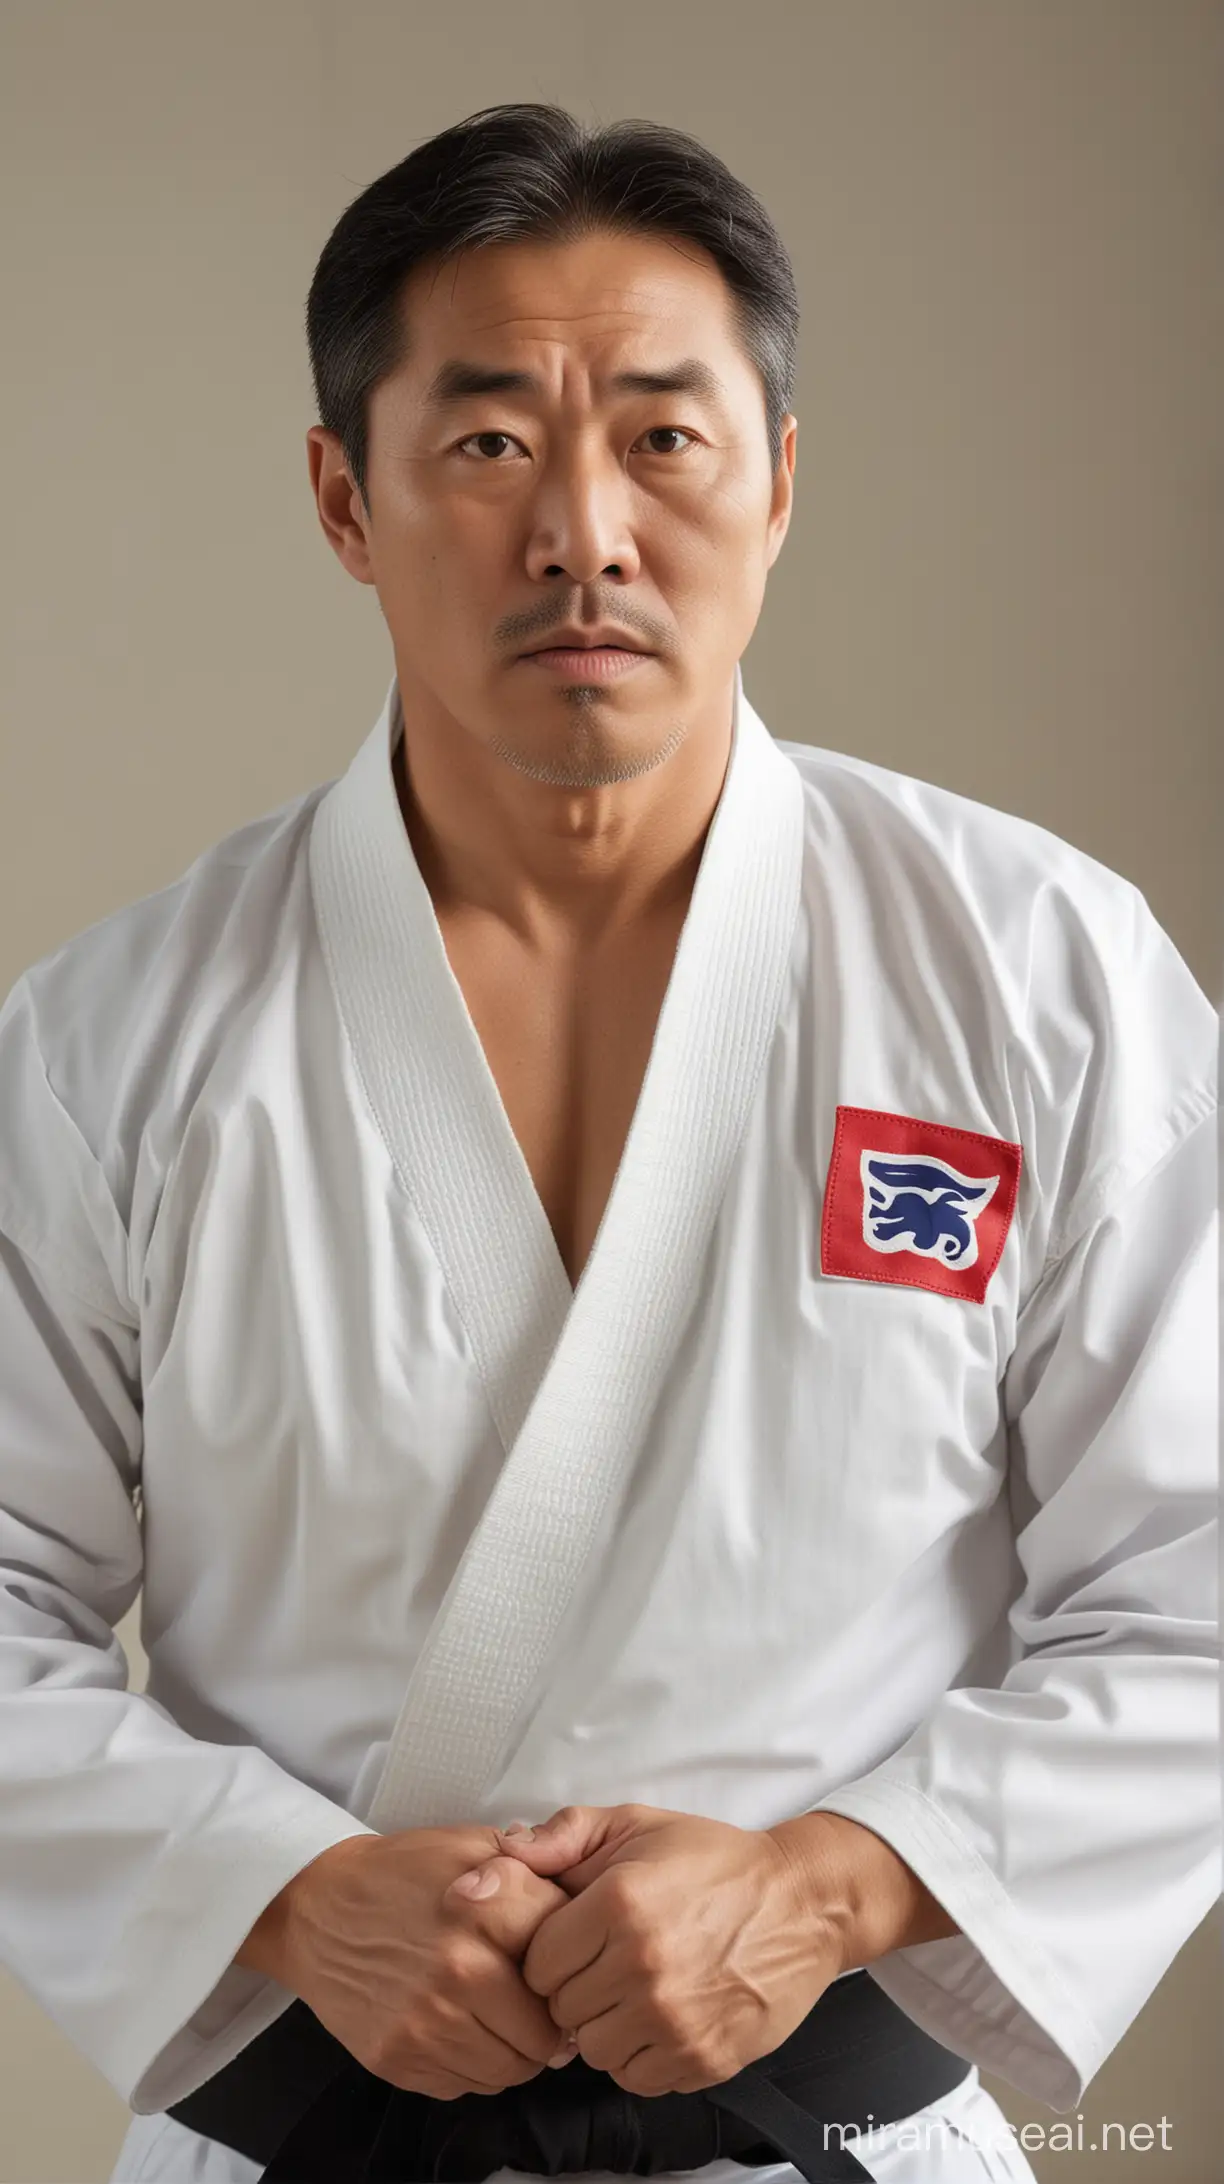 Korean Taekwondo Master Demonstrating Techniques in Traditional Dojo